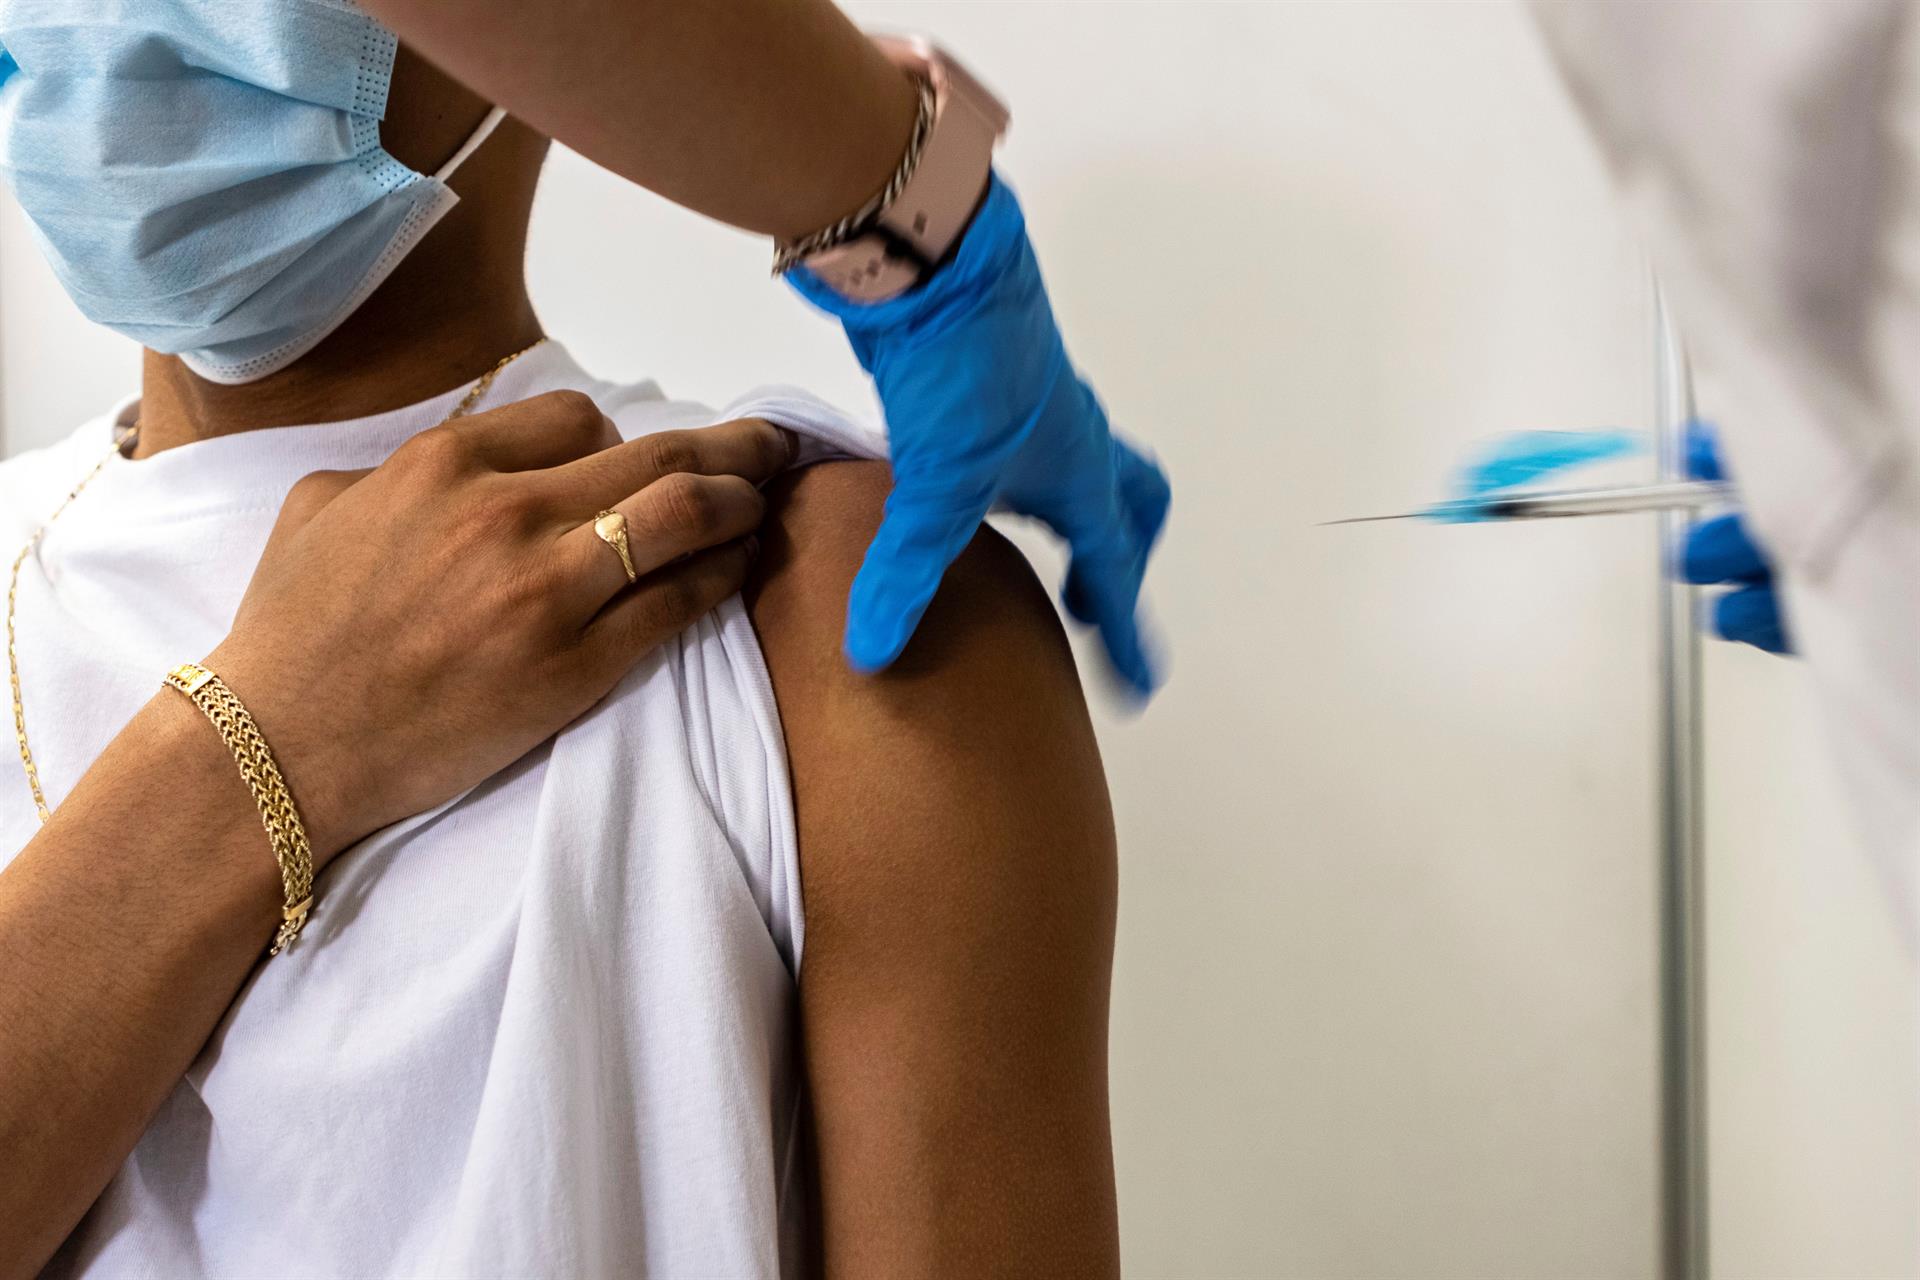 EE.UU. recomendará una dosis de refuerzo de la vacuna anticovid tras 8 meses de inmunización completa